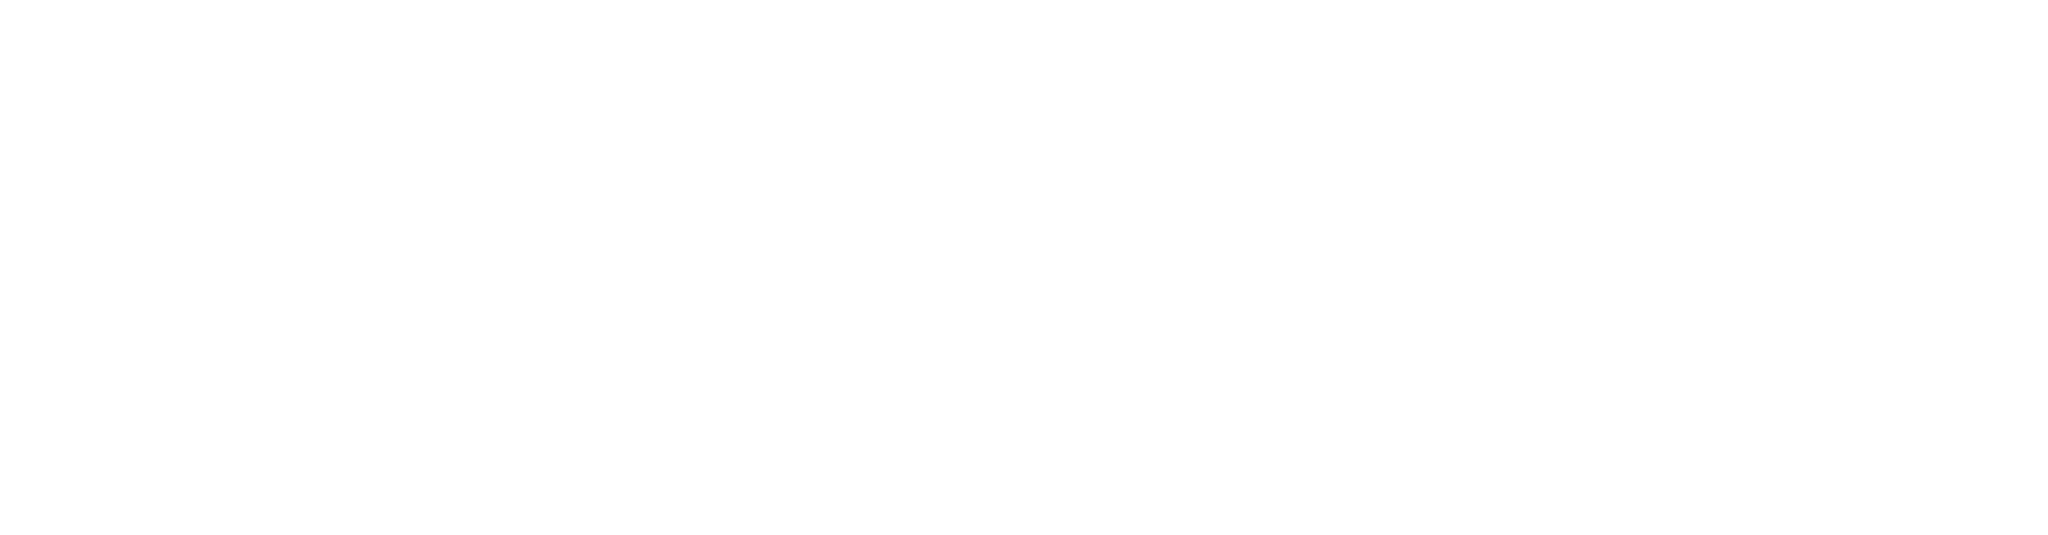 Financiado por la Unión Europea - NextGeneration UE